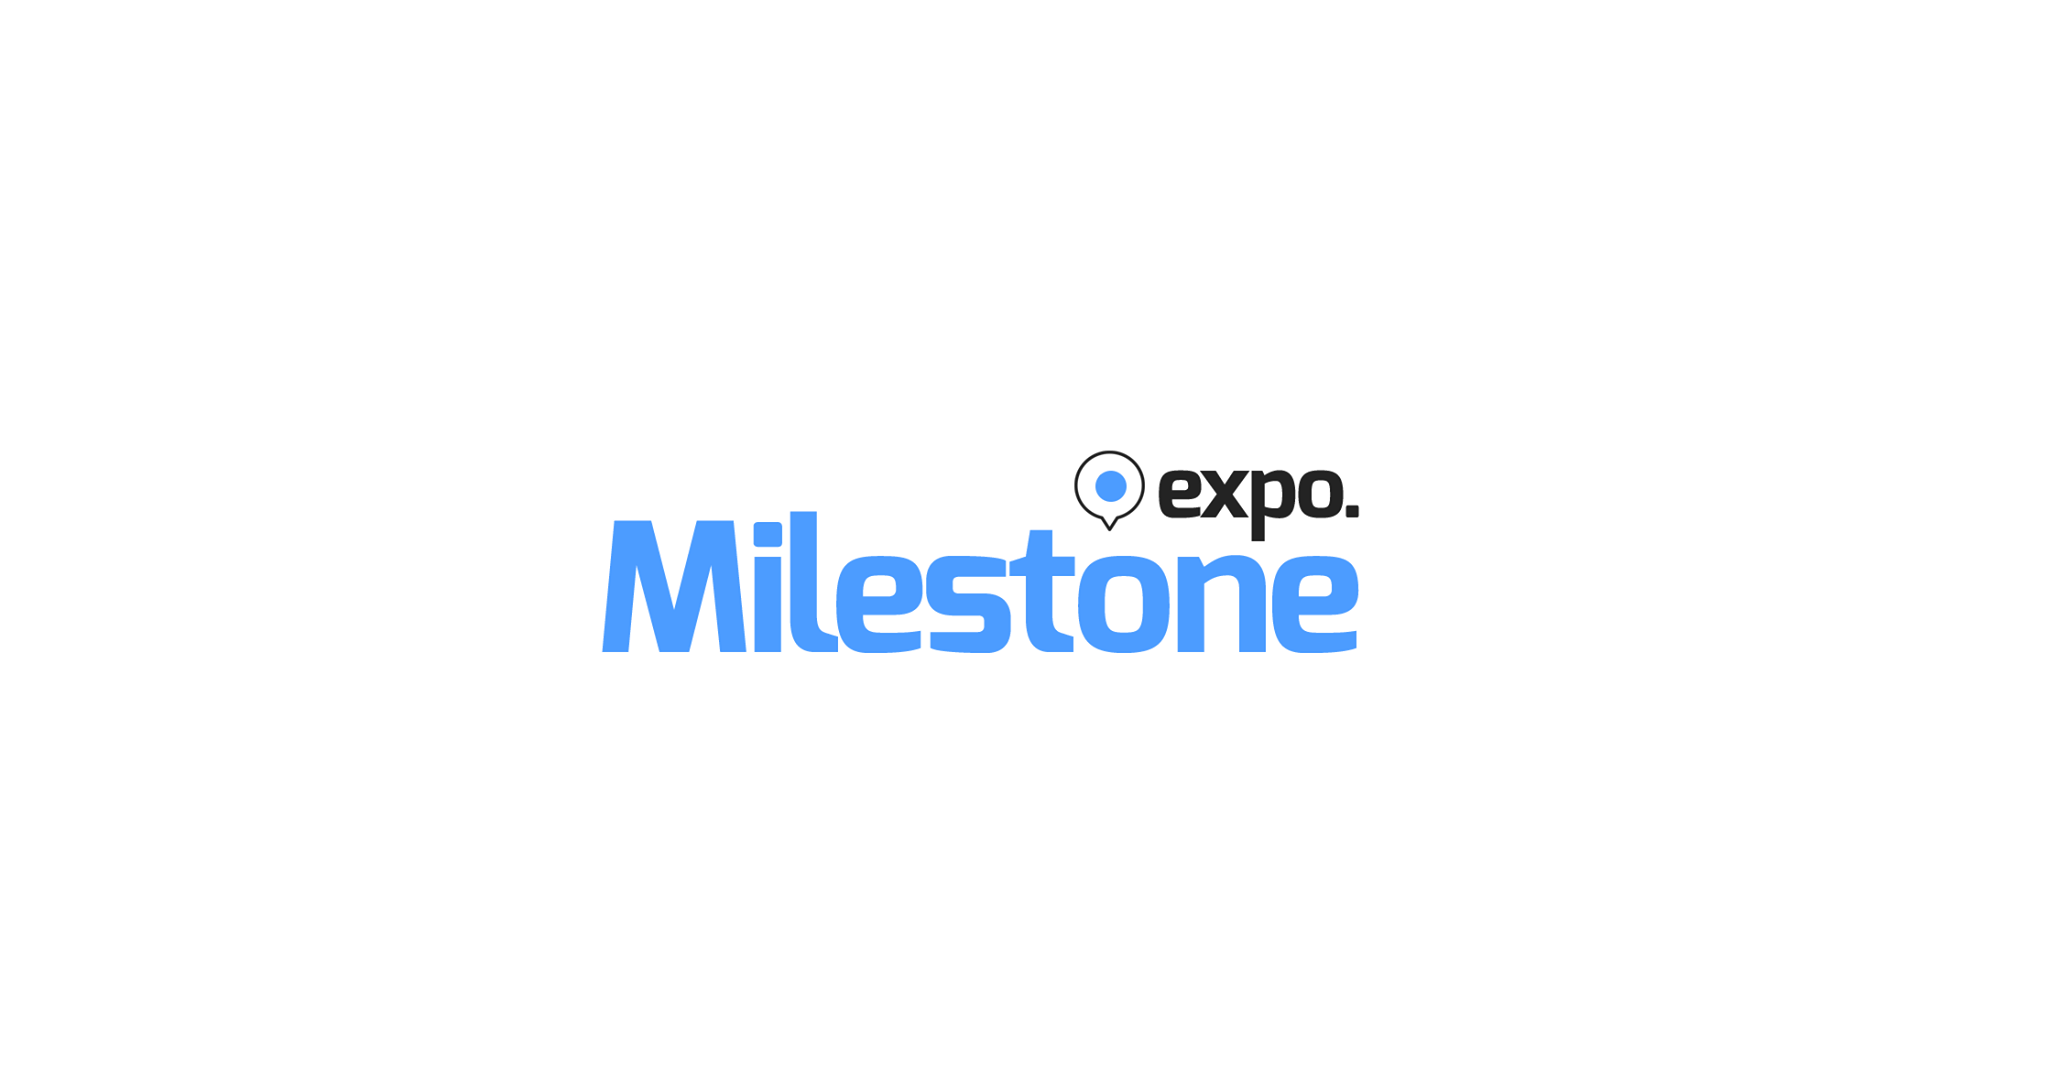 Milestone Expo